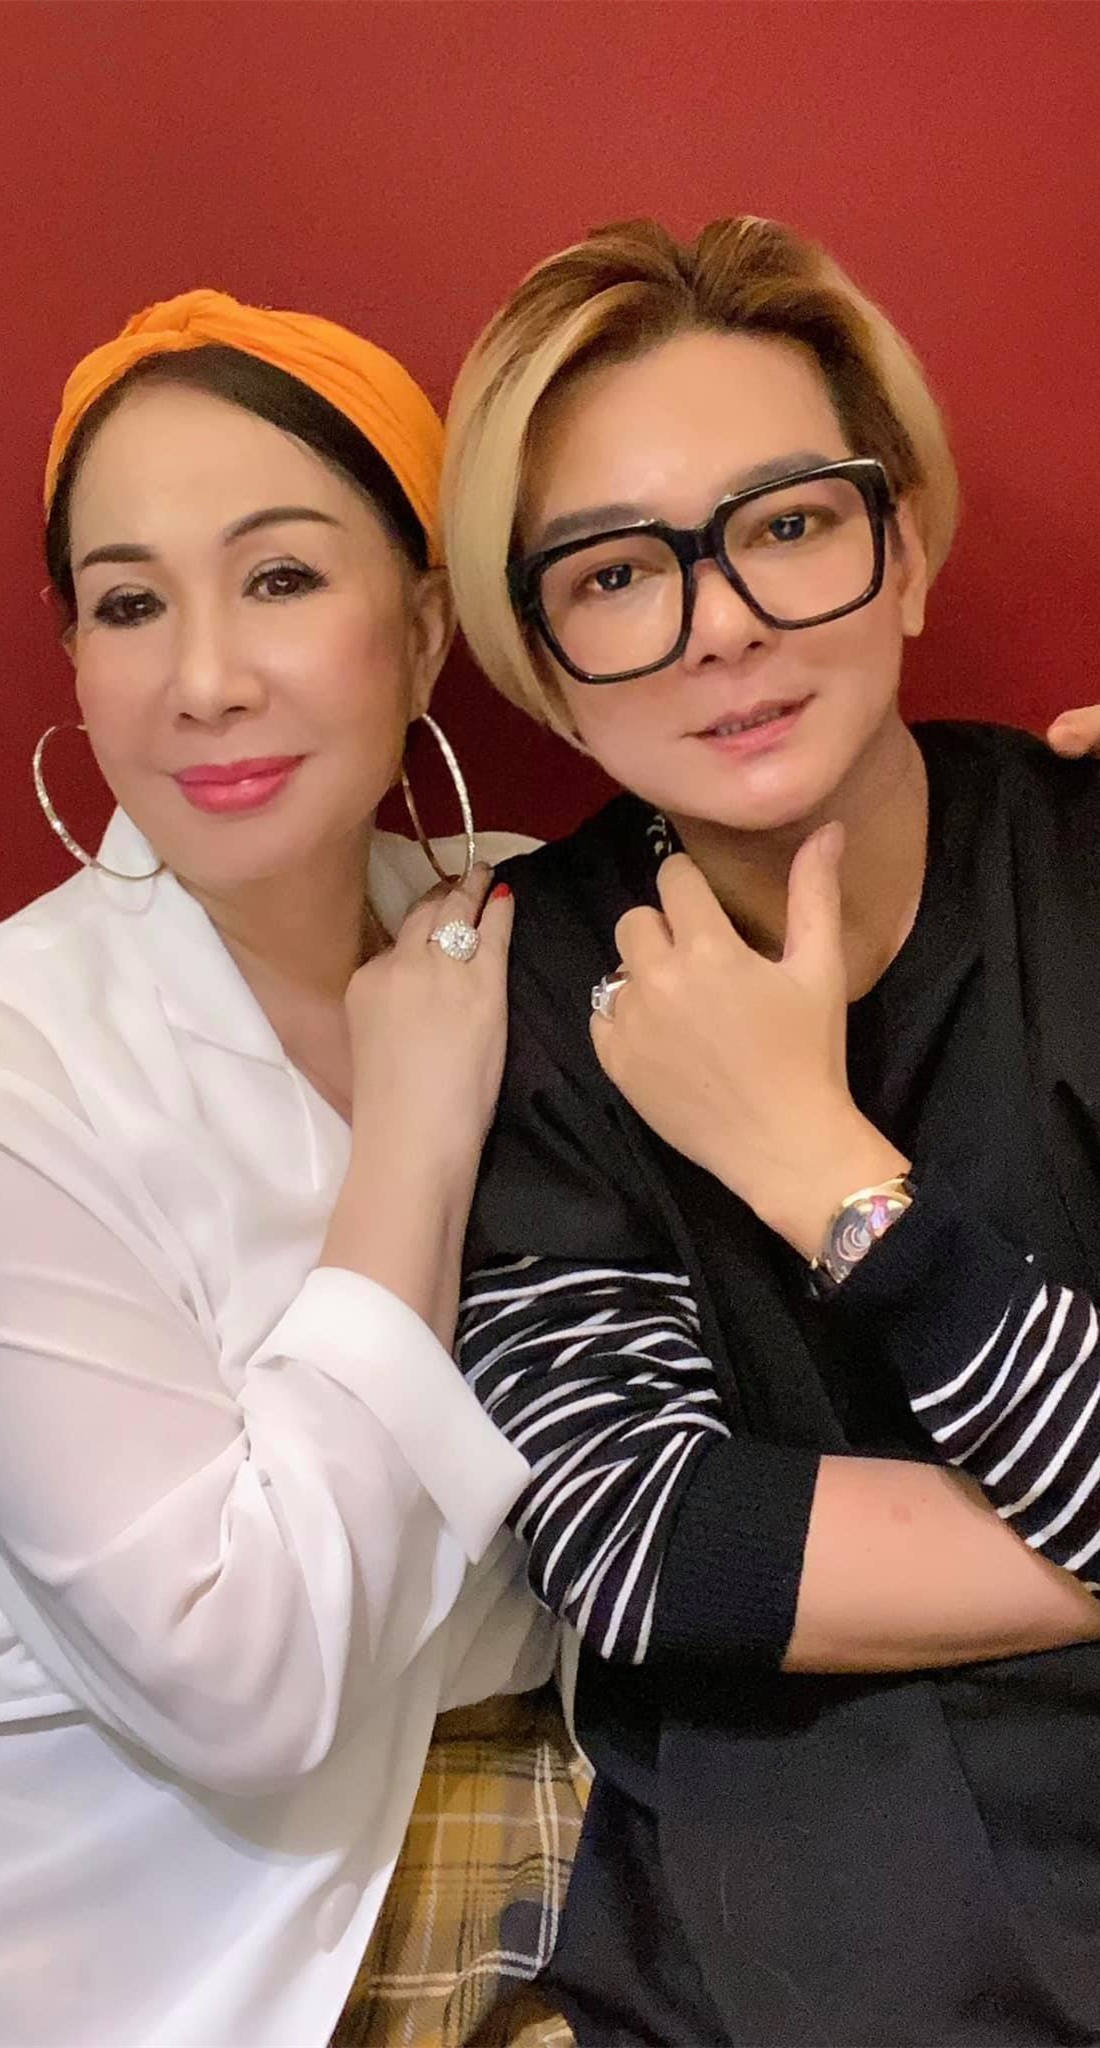 Ca sĩ Vũ Hà hạnh phúc bên bà xã 60 tuổi